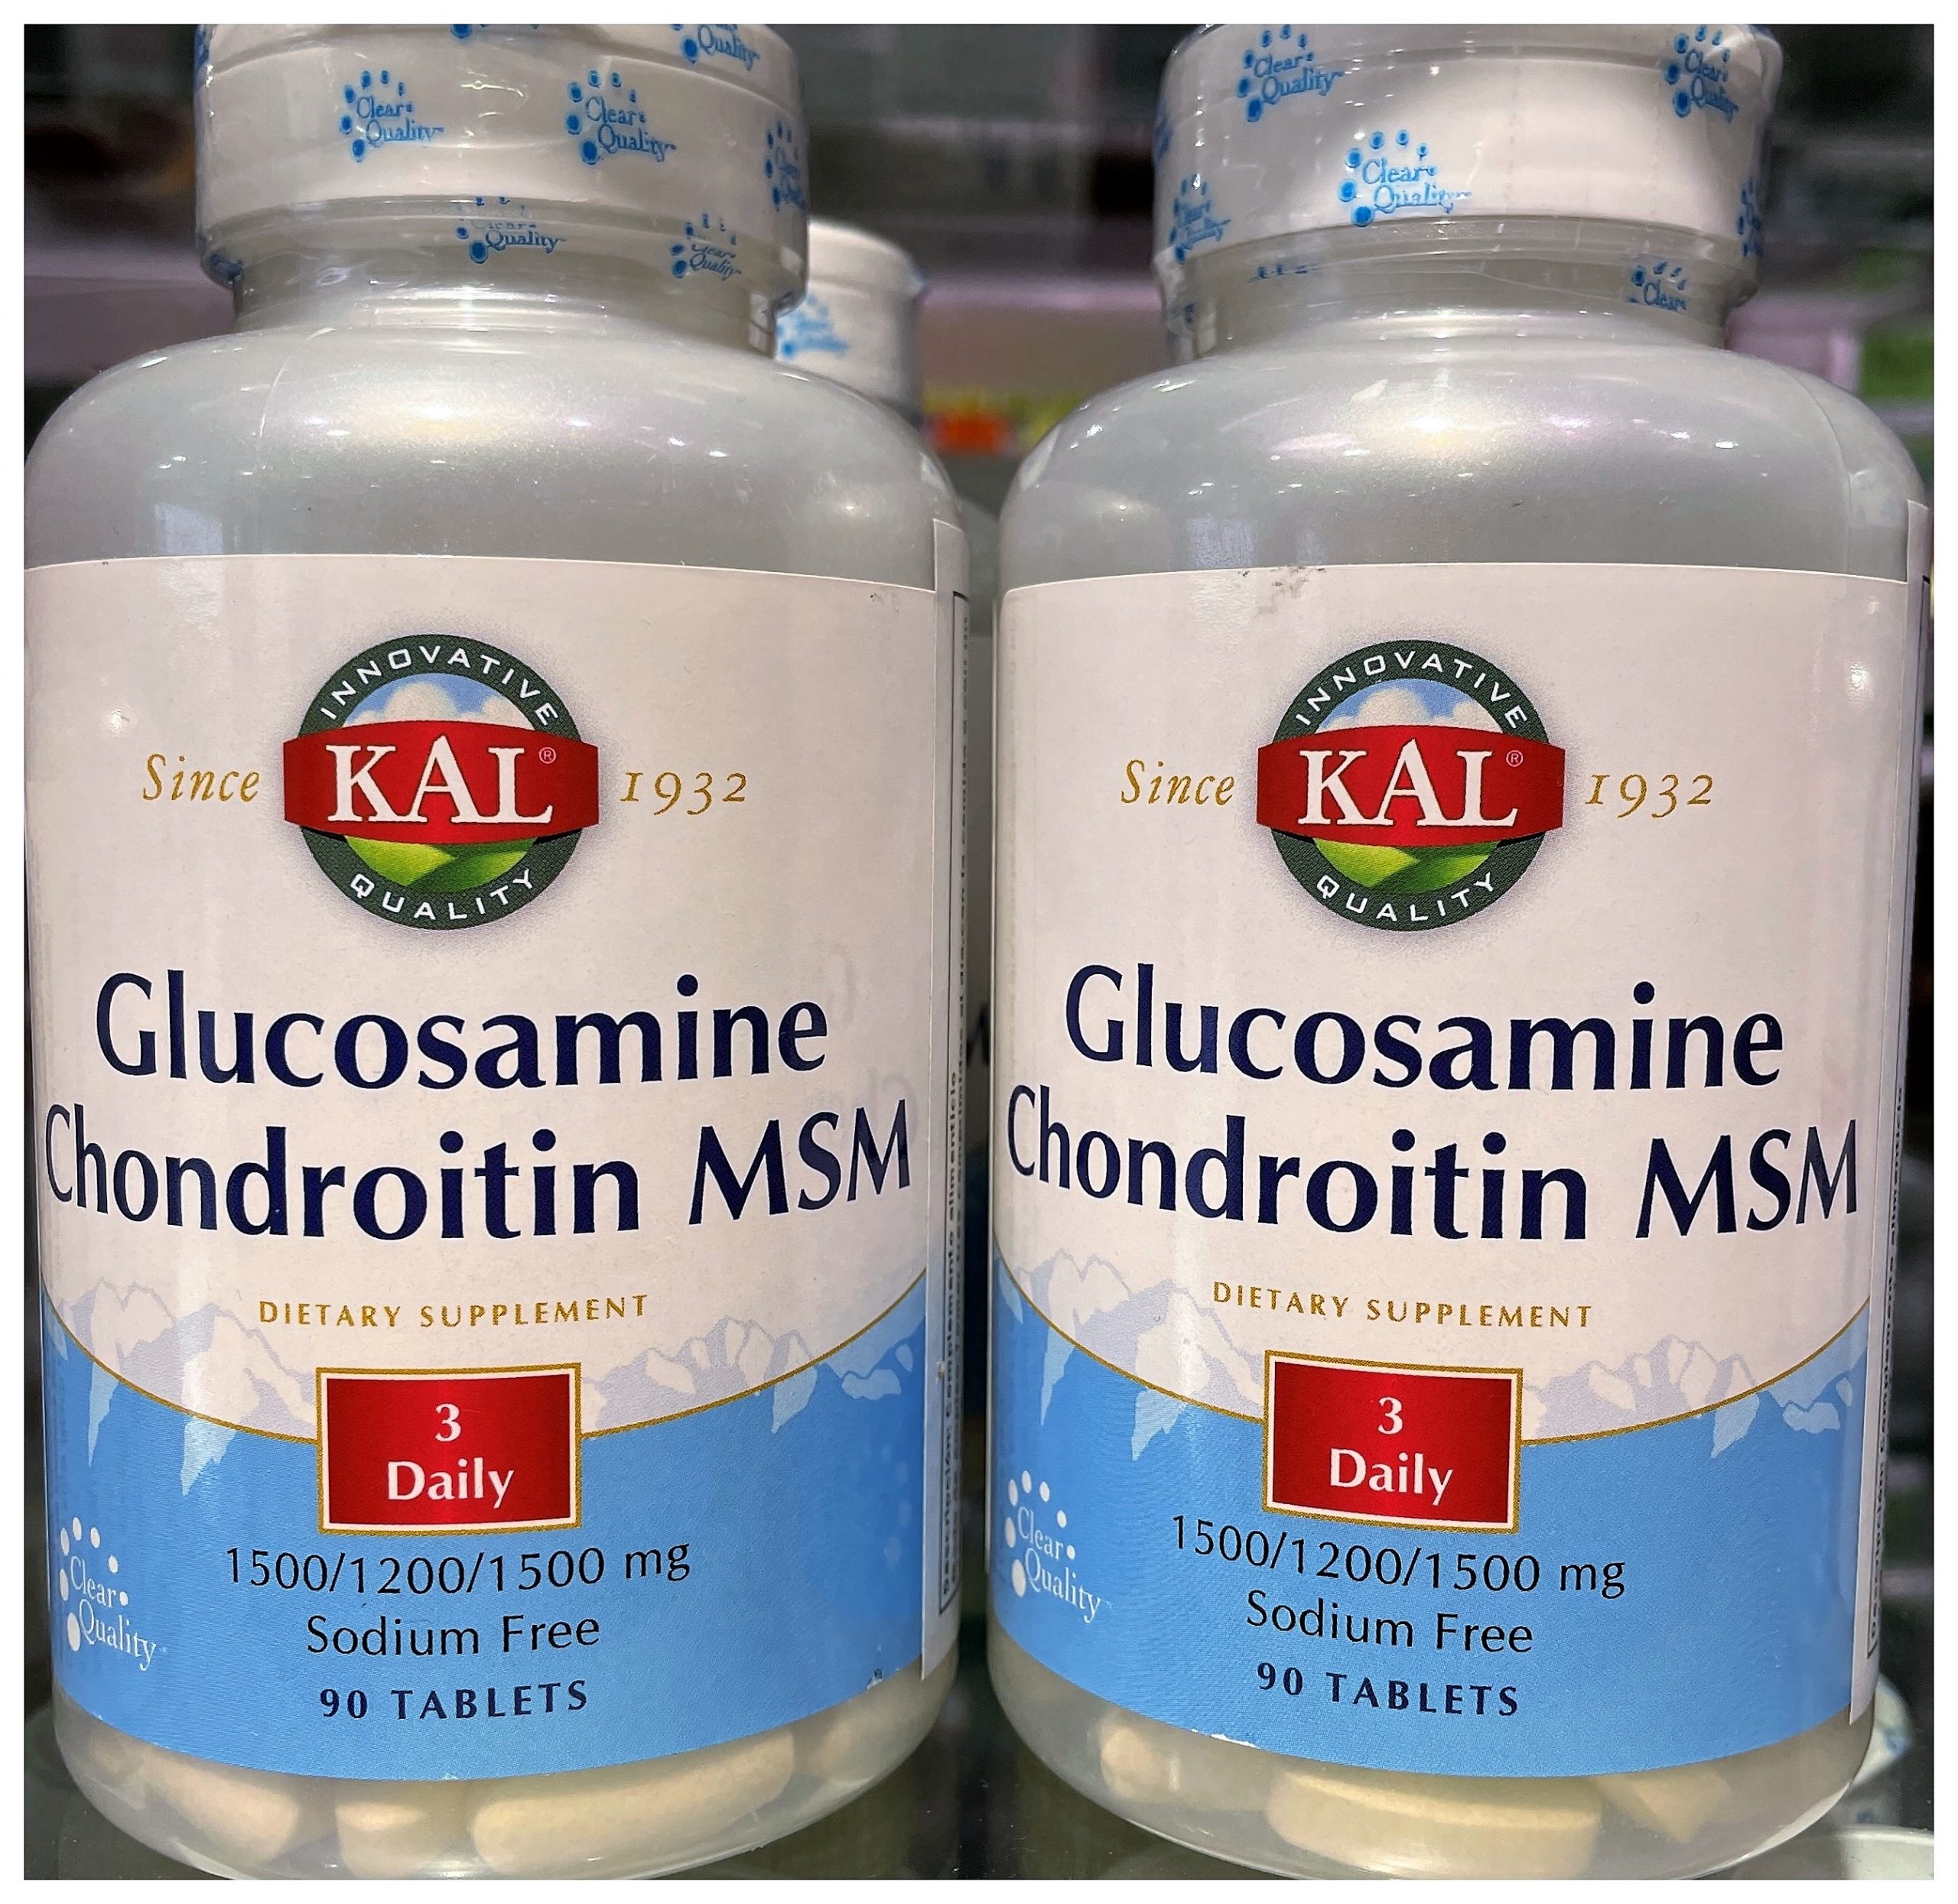 Kal Glucosamine/Chondroitin/Msm proporcionar apoyo nutritivo para la función articular, la movilidad y el confort.